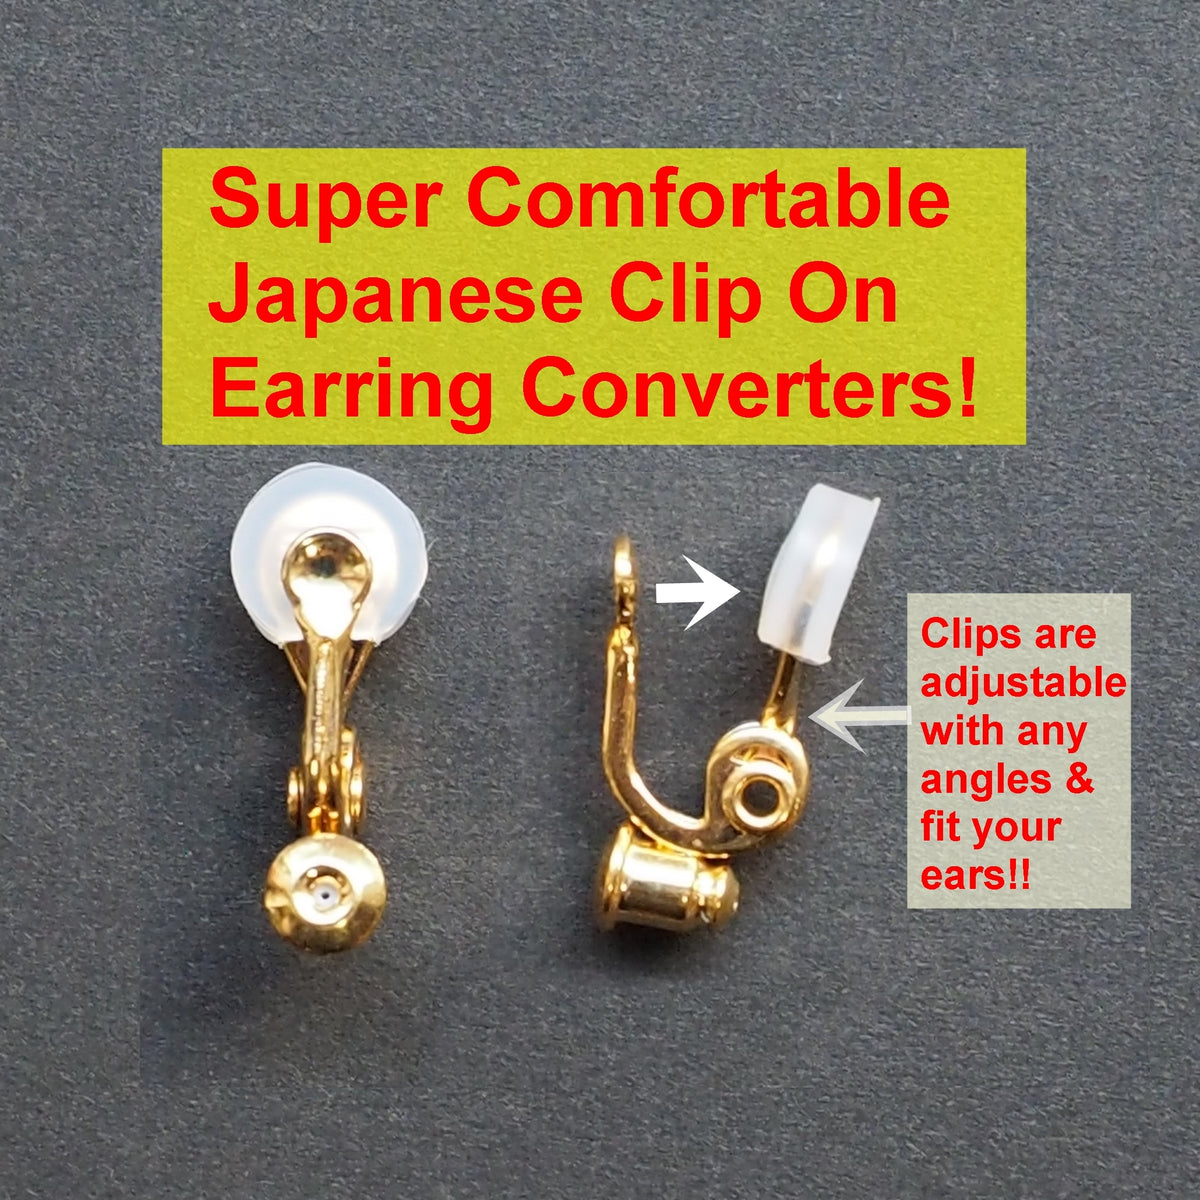 Clip-On Earrings Converters, Convert Pierced Earrings Into Clip-On